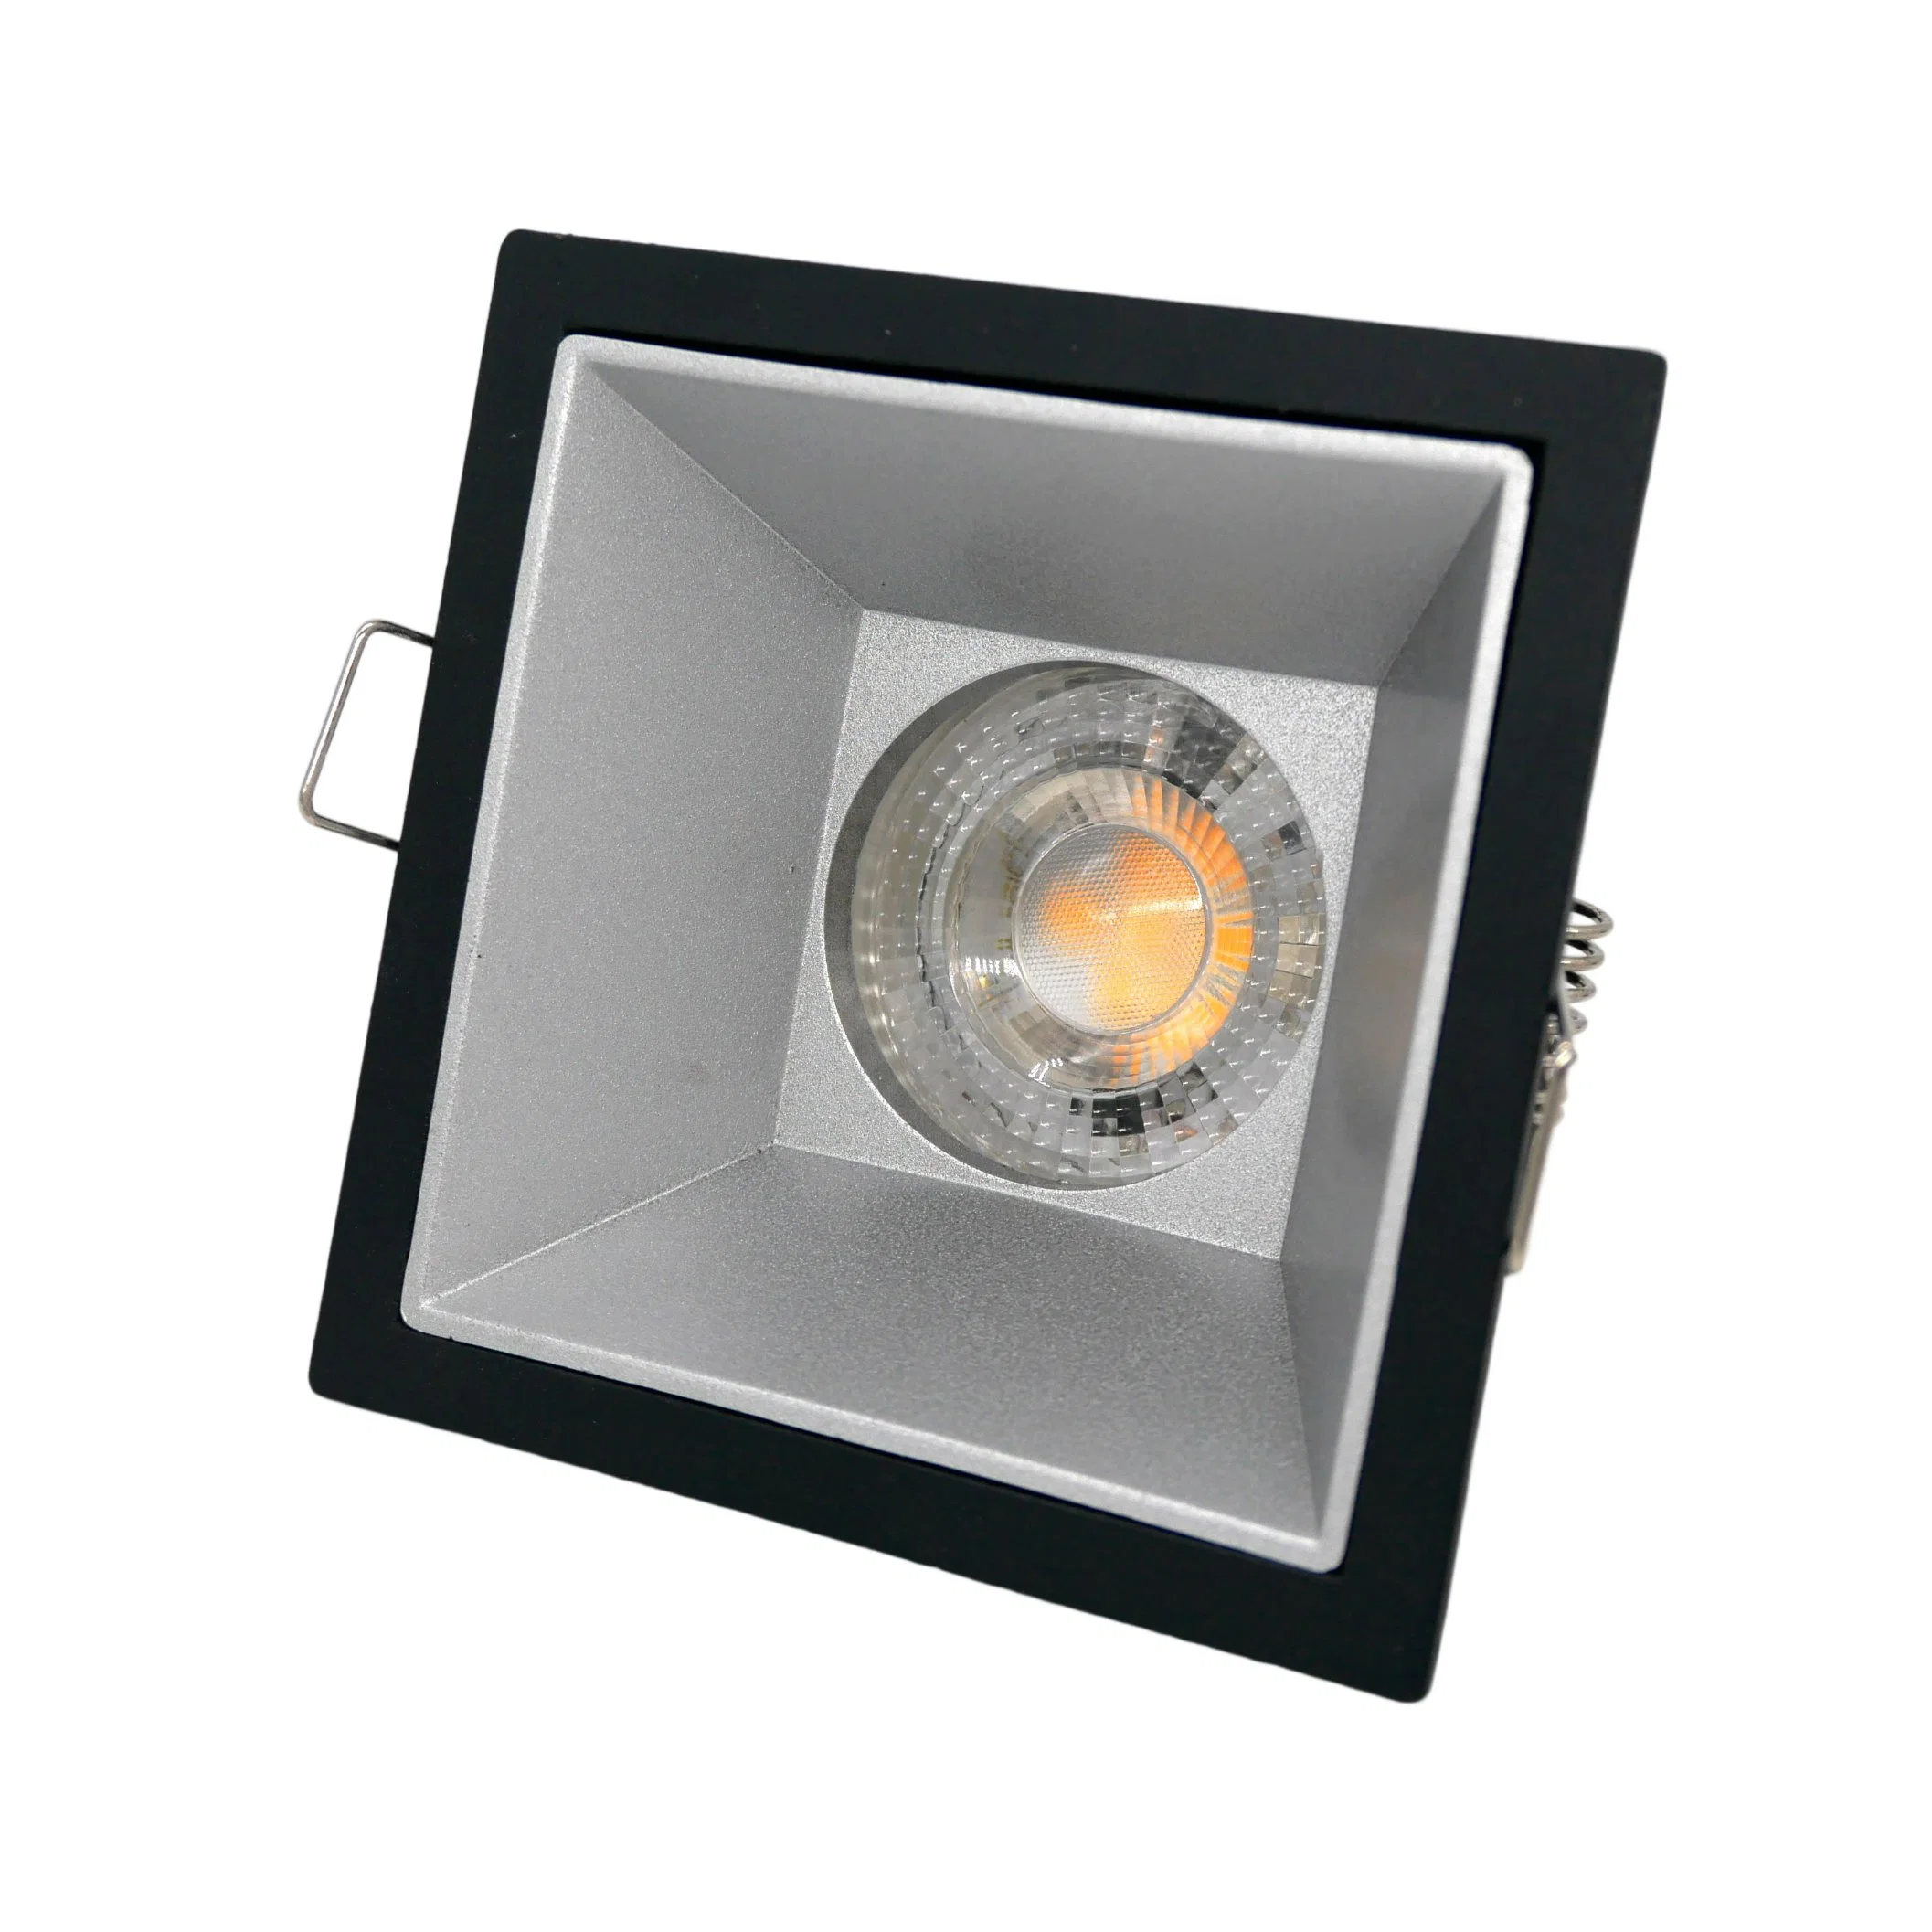 Aluminum PC Inner Ring MR16 GU10 LED Halogen Square Trumpet Ceiling Light Recessed Spotlight Downlight